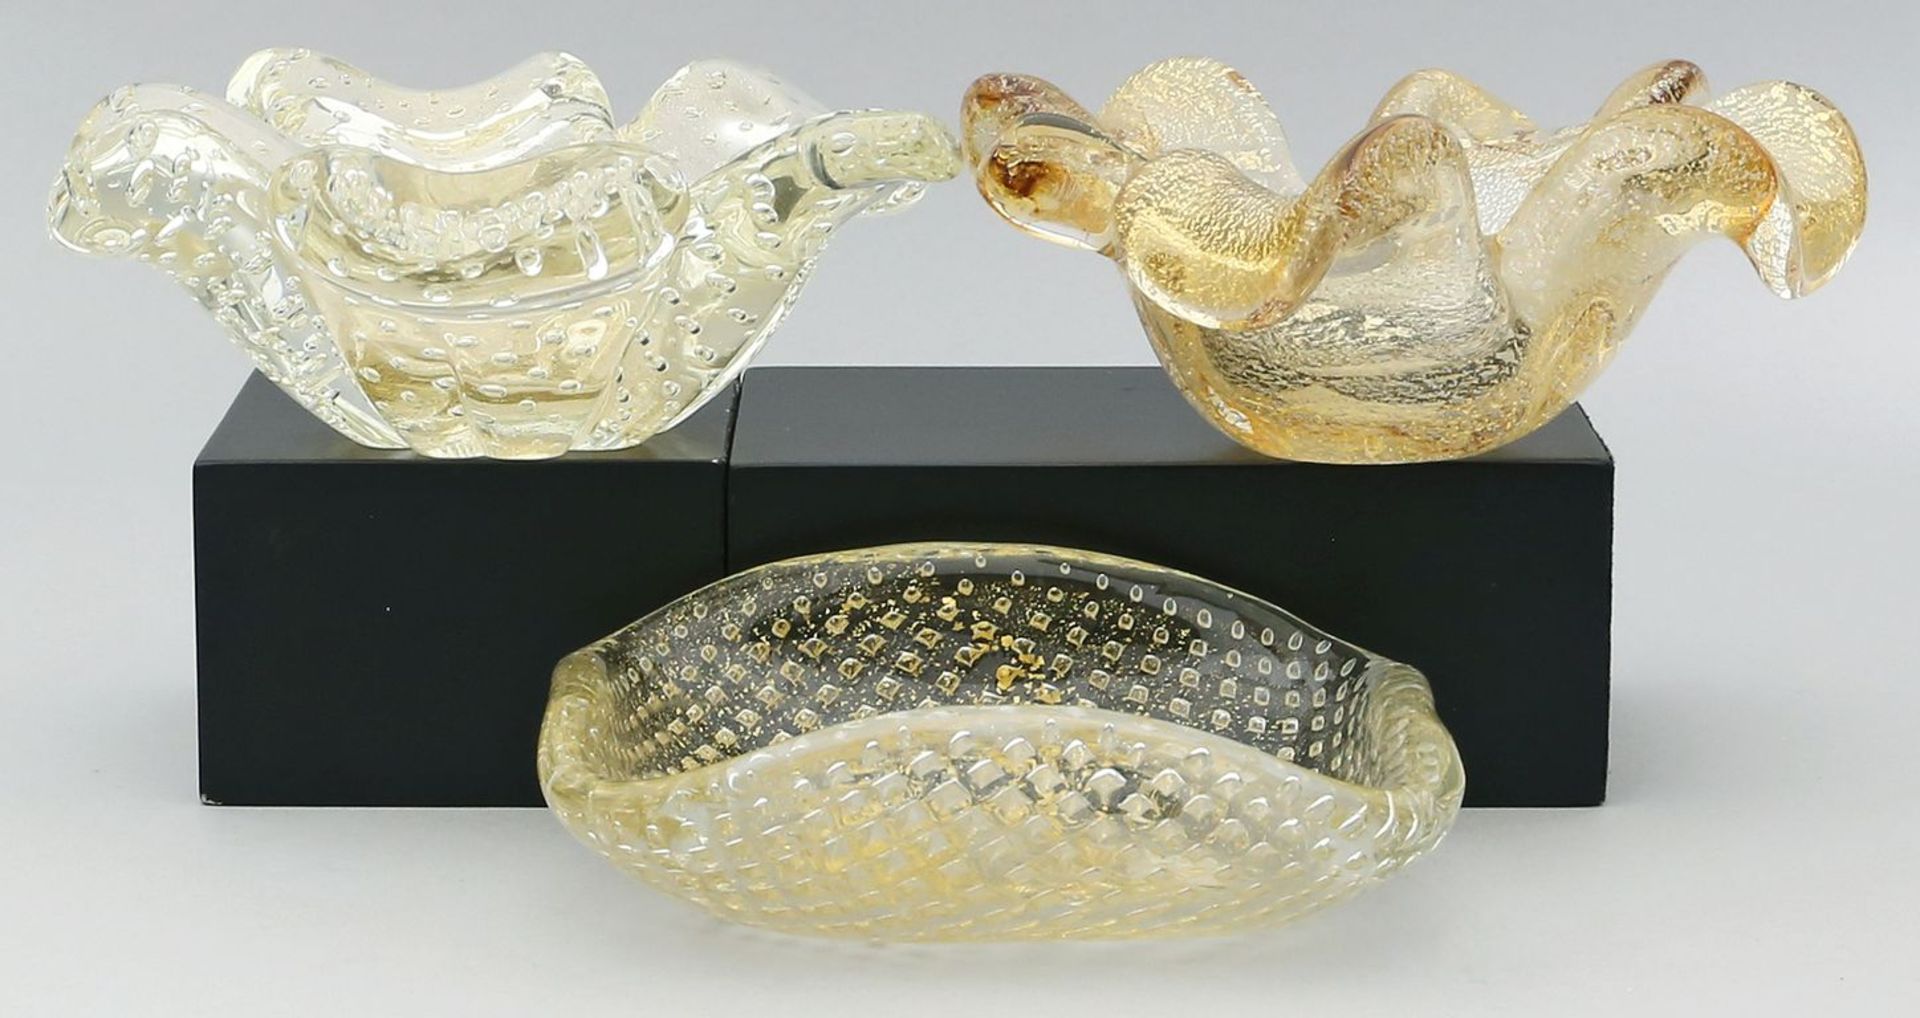 3 Murano-Schalen. Farbloses Glas. Verschiedene Formen. Dickwandig mit eingeschmolzenem Goldpulver.